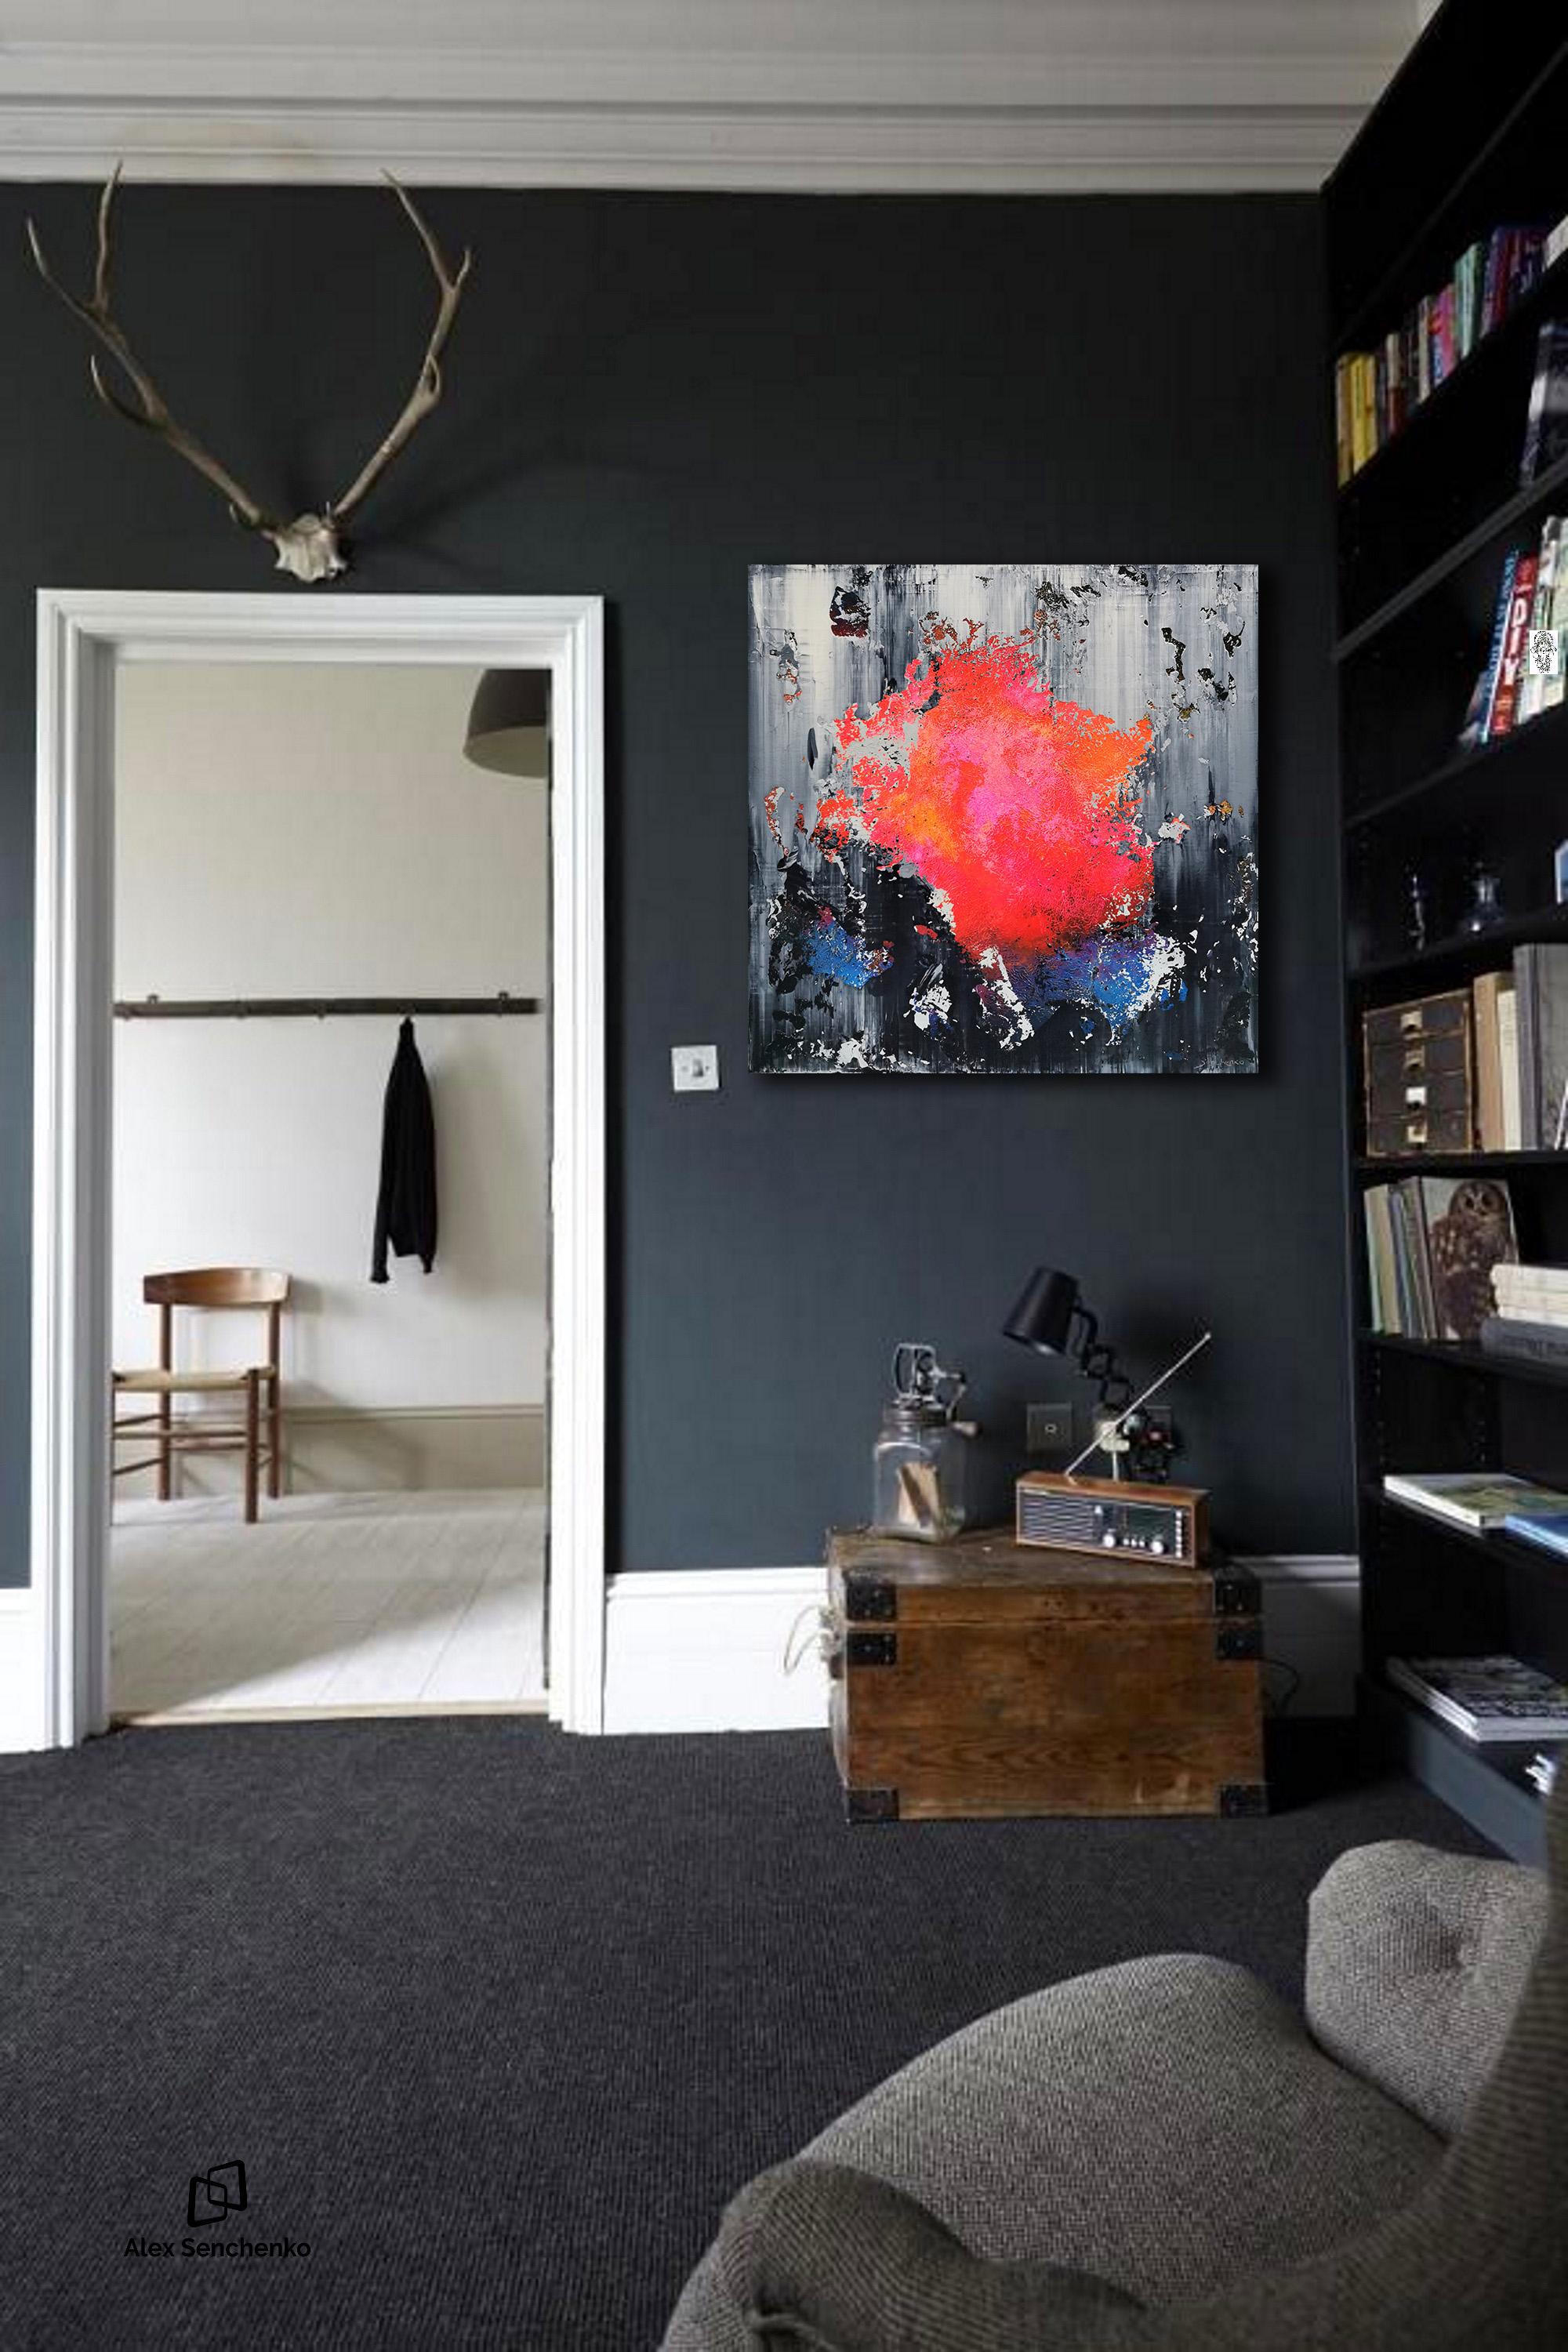 Füllen Sie Ihr Zuhause mit dem, was Sie inspiriert.
Dieses Originalkunstwerk von Alex Senchenko ist ein abstraktes, zeitgenössisches Werk in Acryl auf Leinwand. Perfekt für einen Raum, der einen Farbakzent braucht.
Mit Echtheitszertifikat, signiert